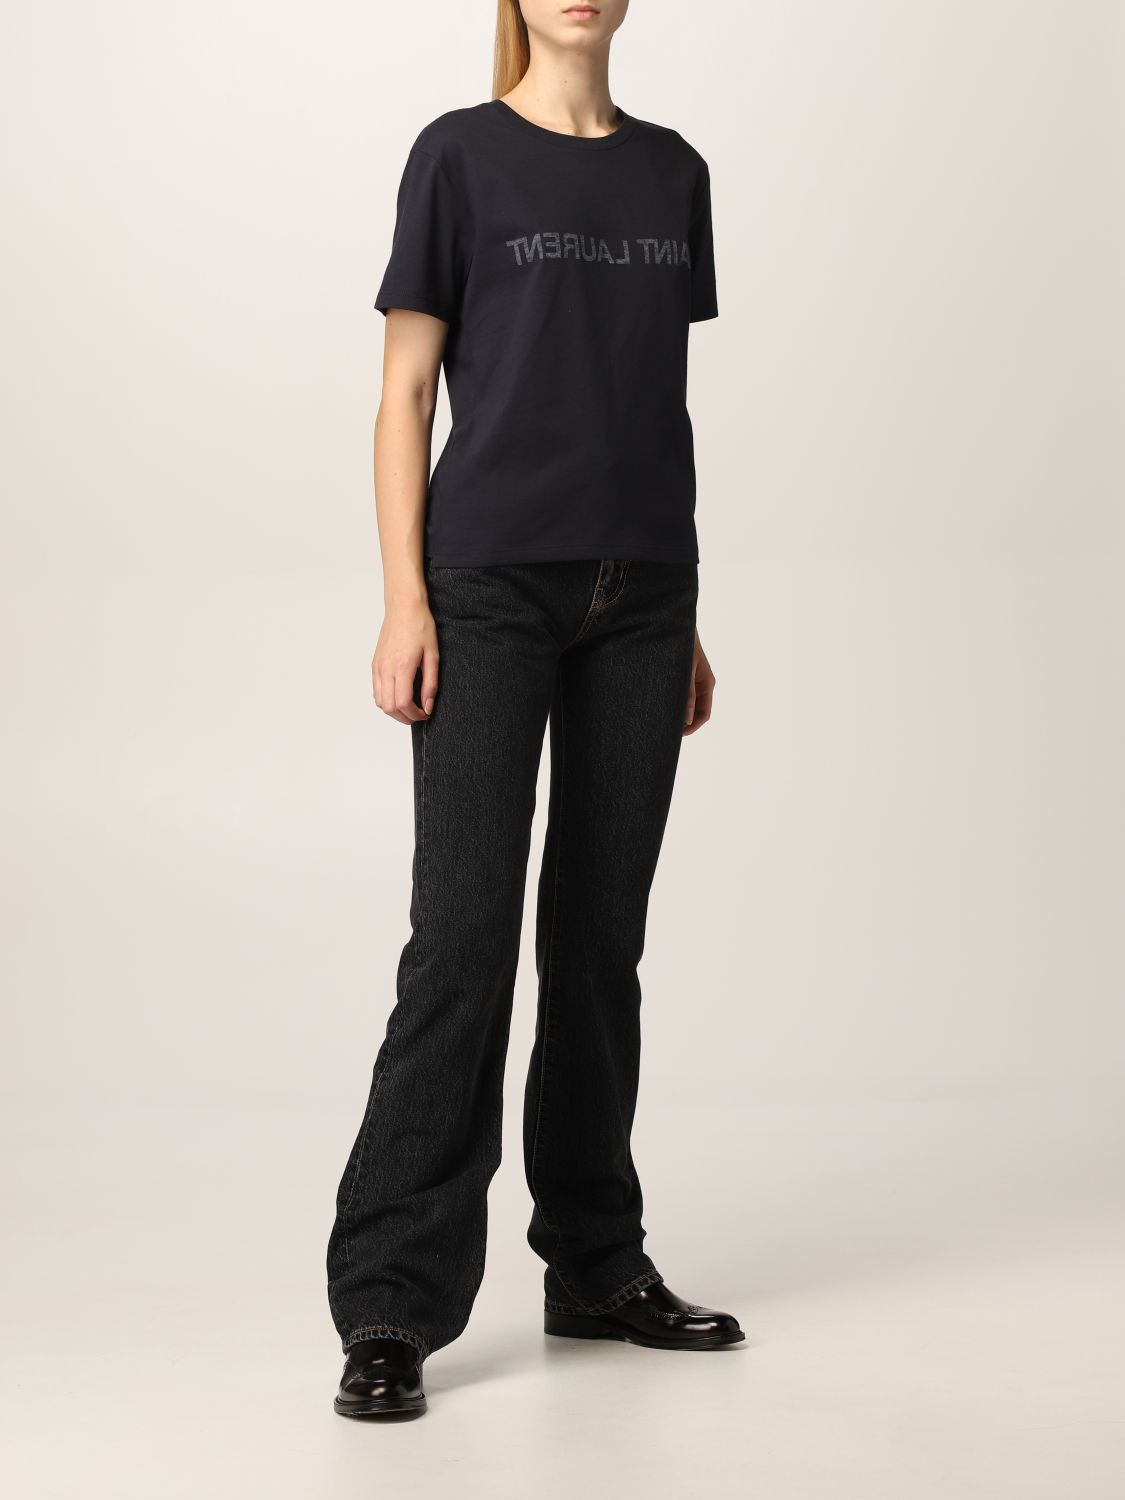 Camiseta Saint Laurent: Camiseta mujer Saint Laurent azul oscuro 2